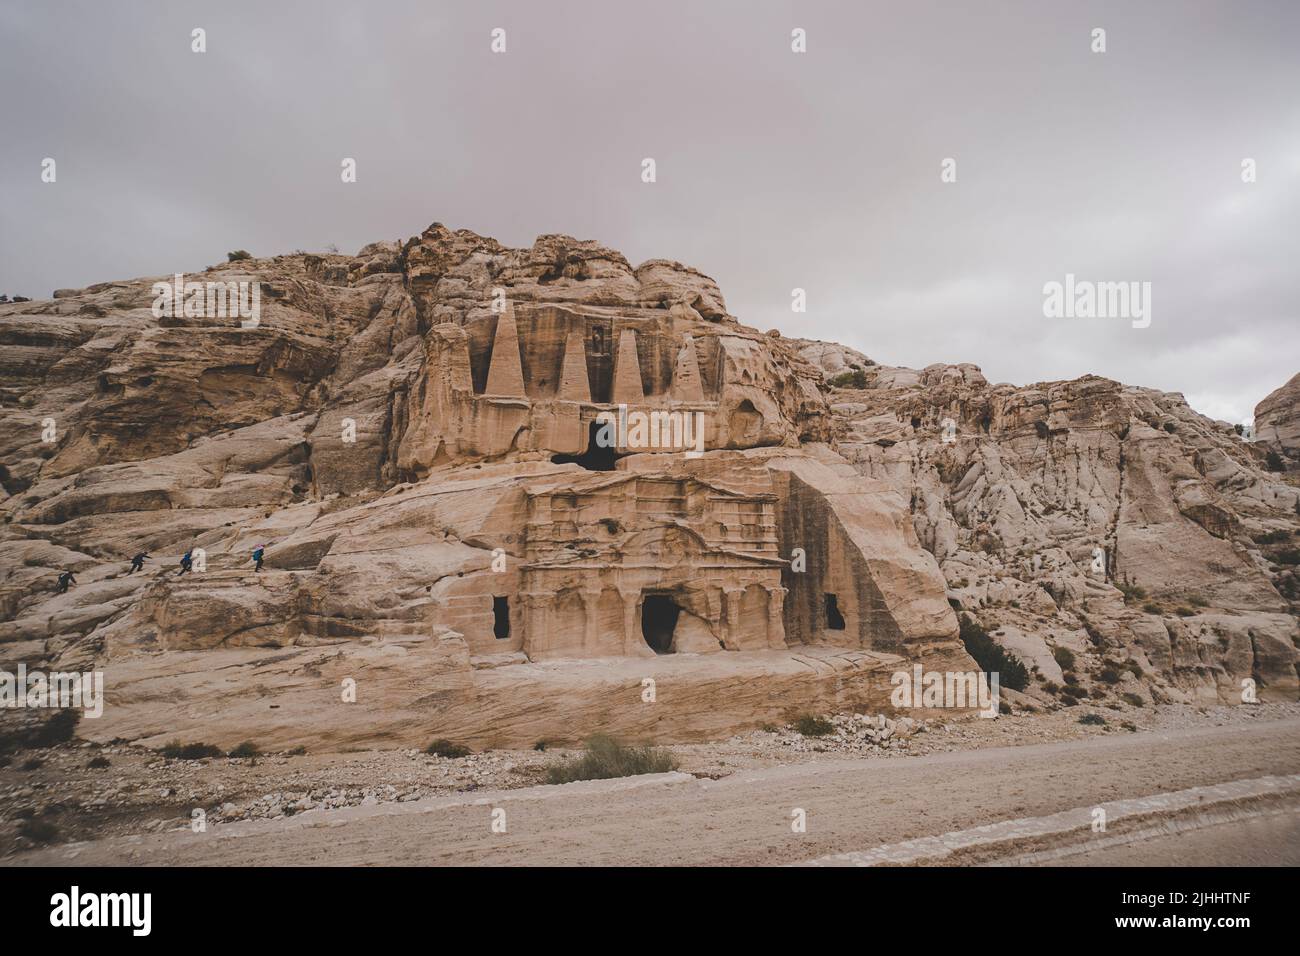 Wunderschöne rote Felsformationen in Petra Rose City Jordan. Petra ist eines der Neuen Sieben Weltwunder. UNESCO-Welterbe. Behausung des alten pe Stockfoto